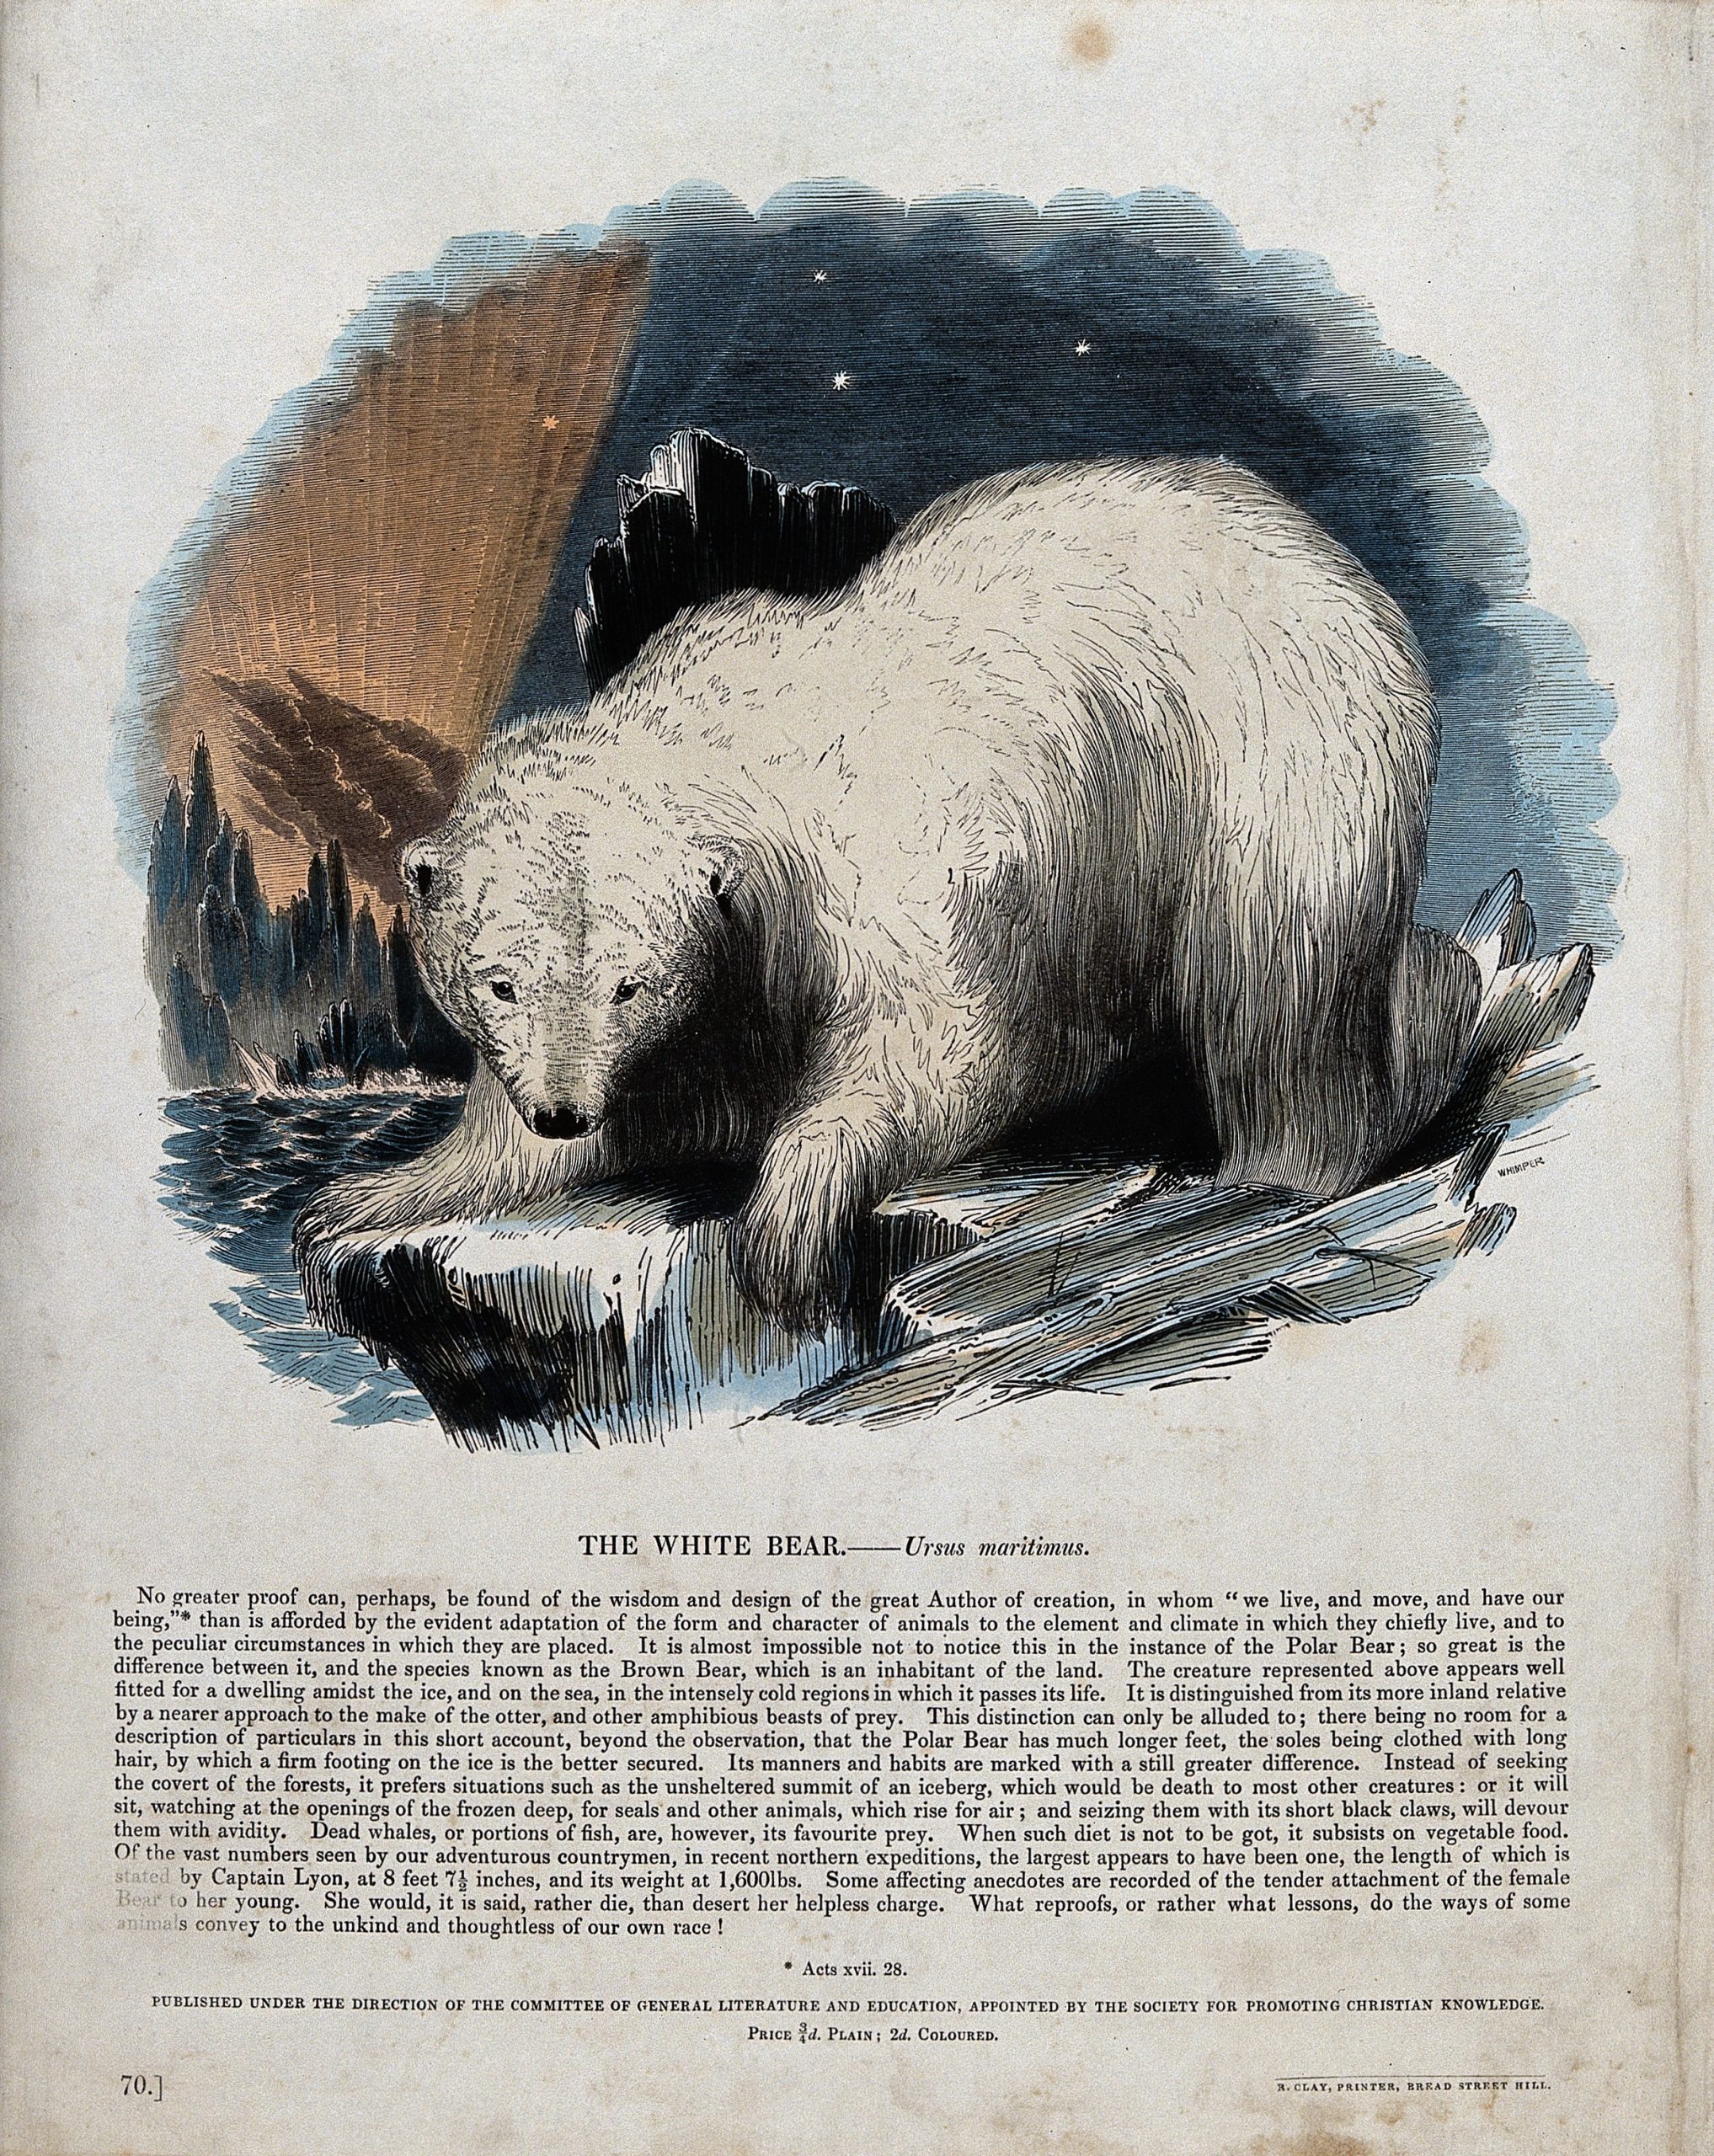 A polar bear standing on an ice floe